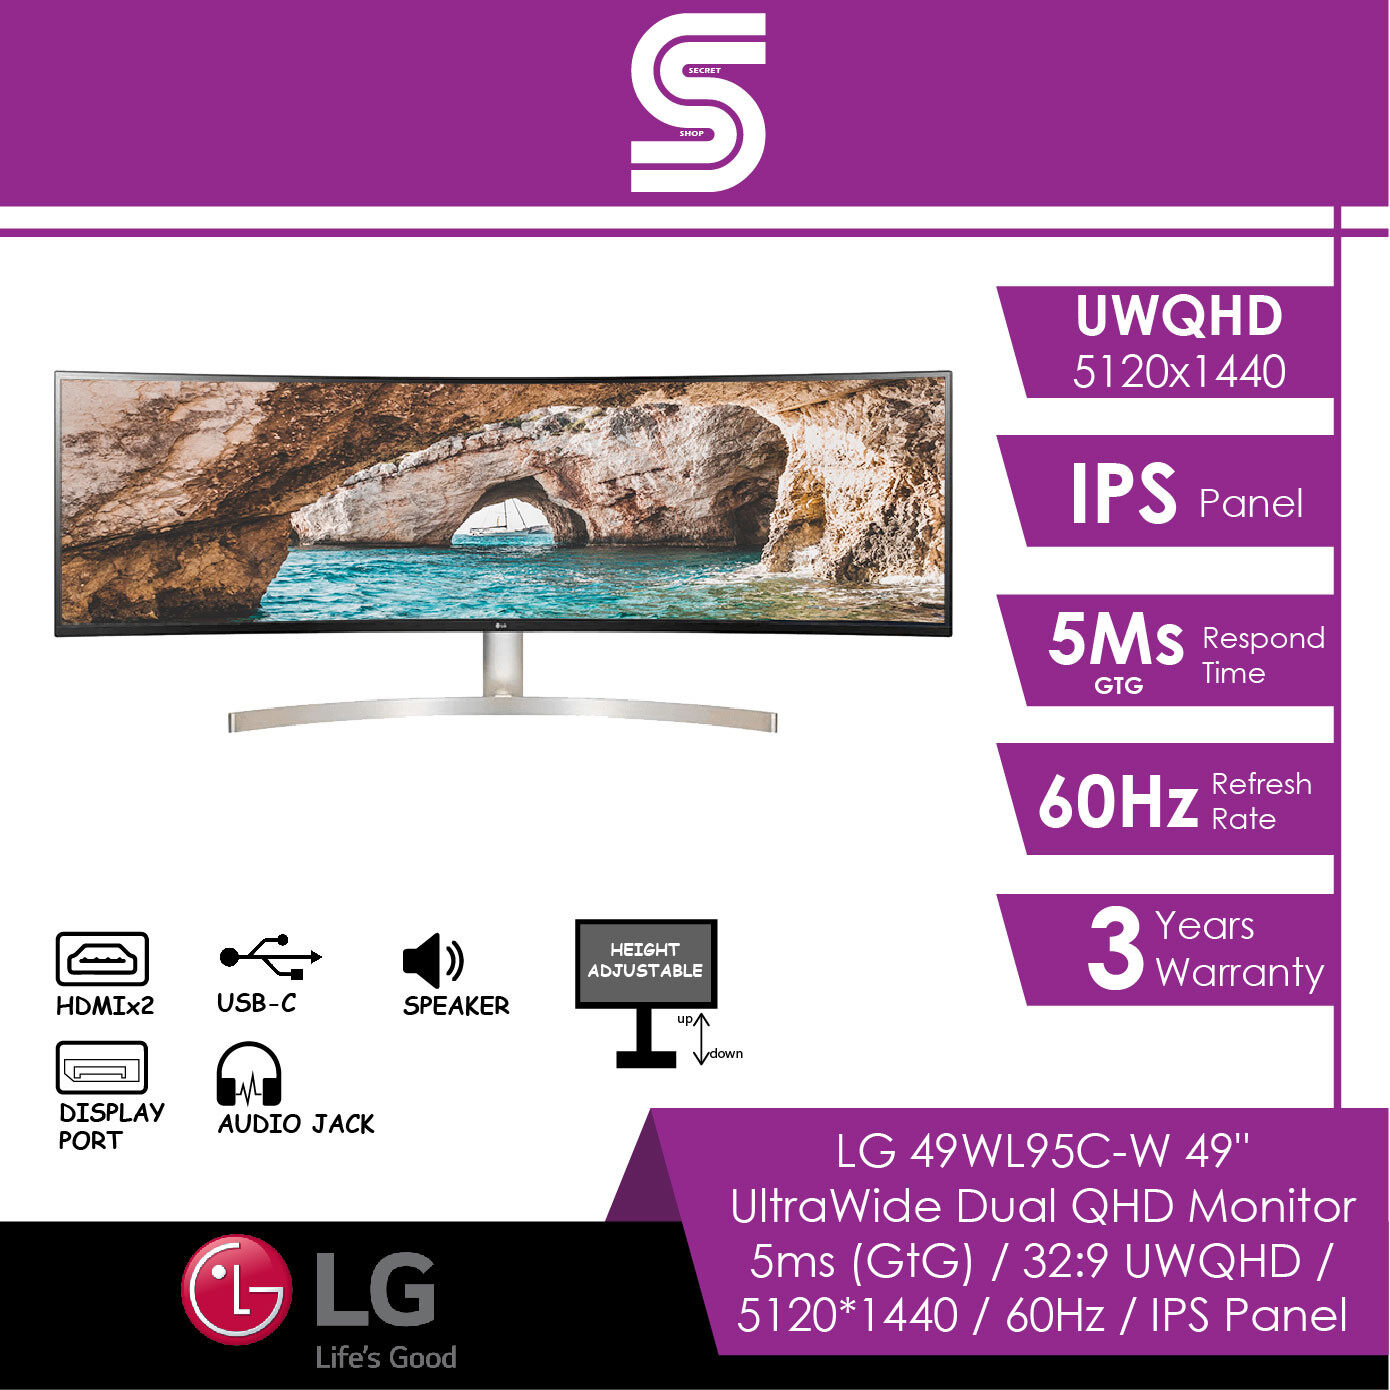 LG UltraWide 49WL95C-W 49" Dual QHD Monitor - 5ms/UWQHD 5120 x 1440/60Hz/IPS Panel/HDMI/DP/USB-C/Audio Jack/Speaker/Height Adjustable